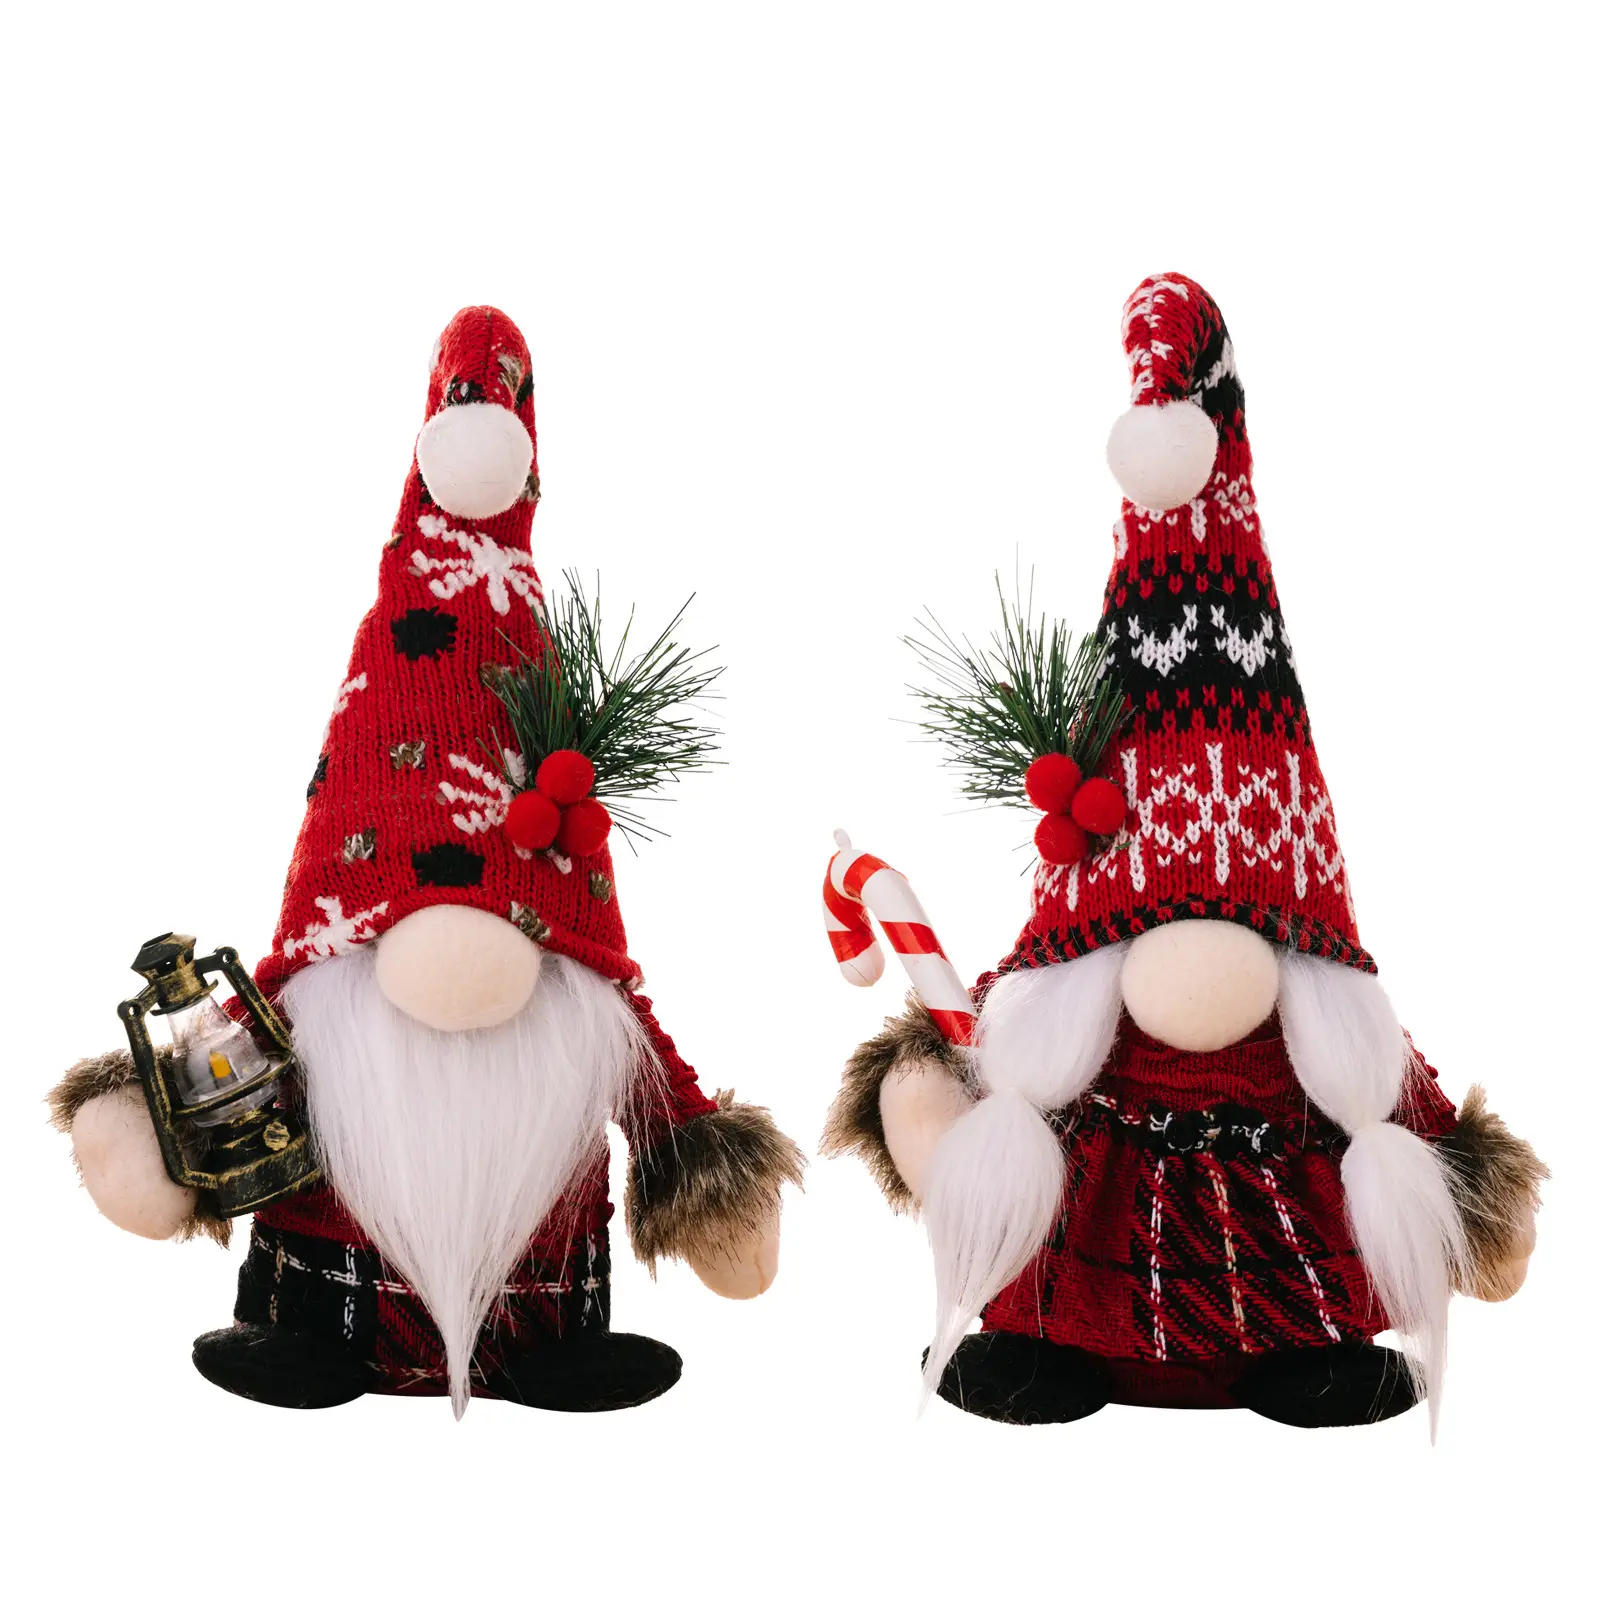 Gnome ornamen natal Tomte Swedia hadiah Tahun Baru dekorasi liburan Natal Beli dekorasi Natal Santa Gnome tanpa wajah